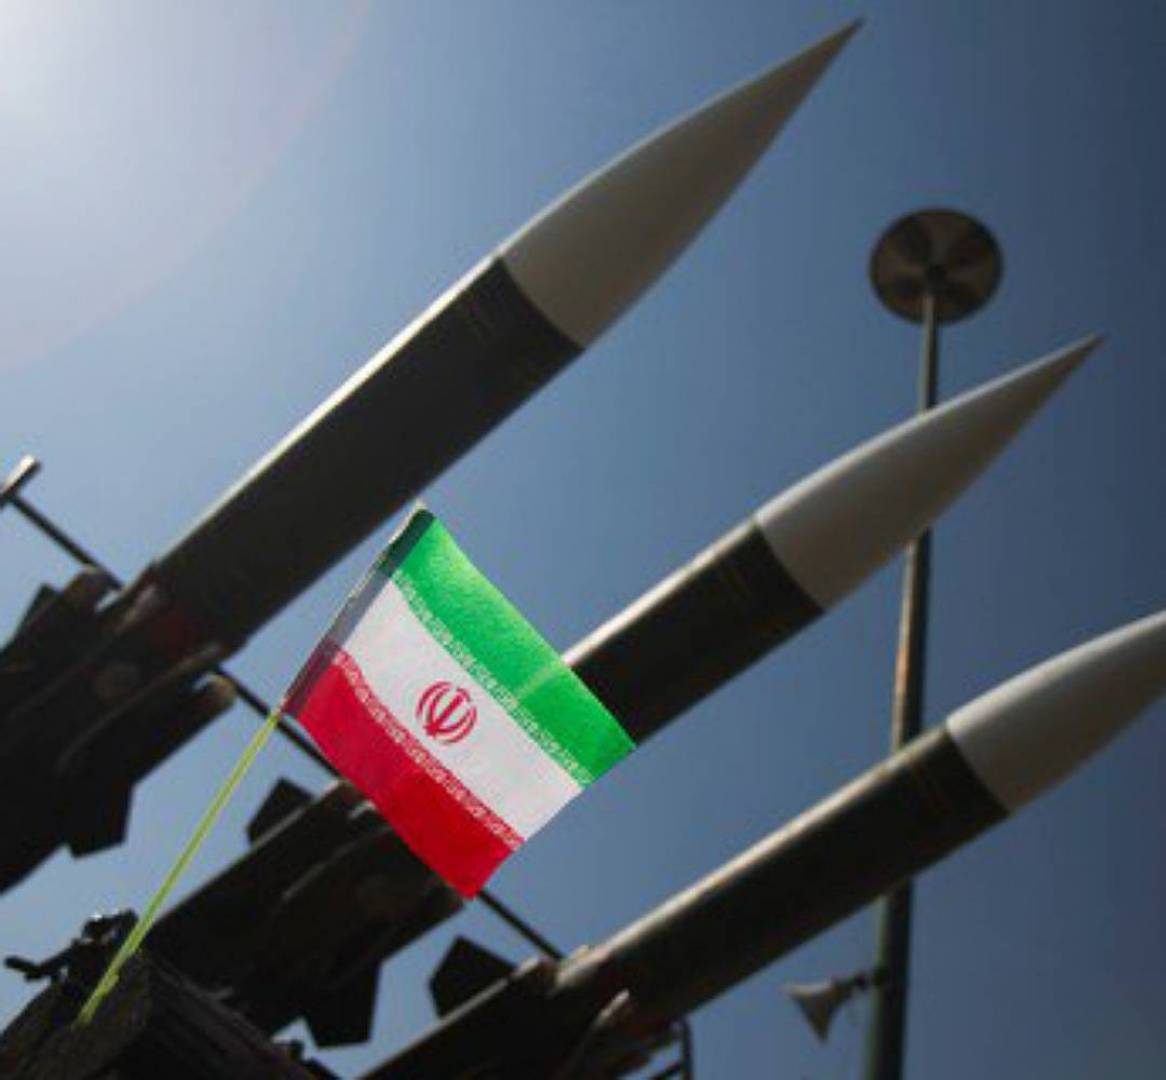 إيران تستعد لإنتاج أول رأس حربي نووي في حال تعرض منشأة “نطنز” النووية لأي هجوم